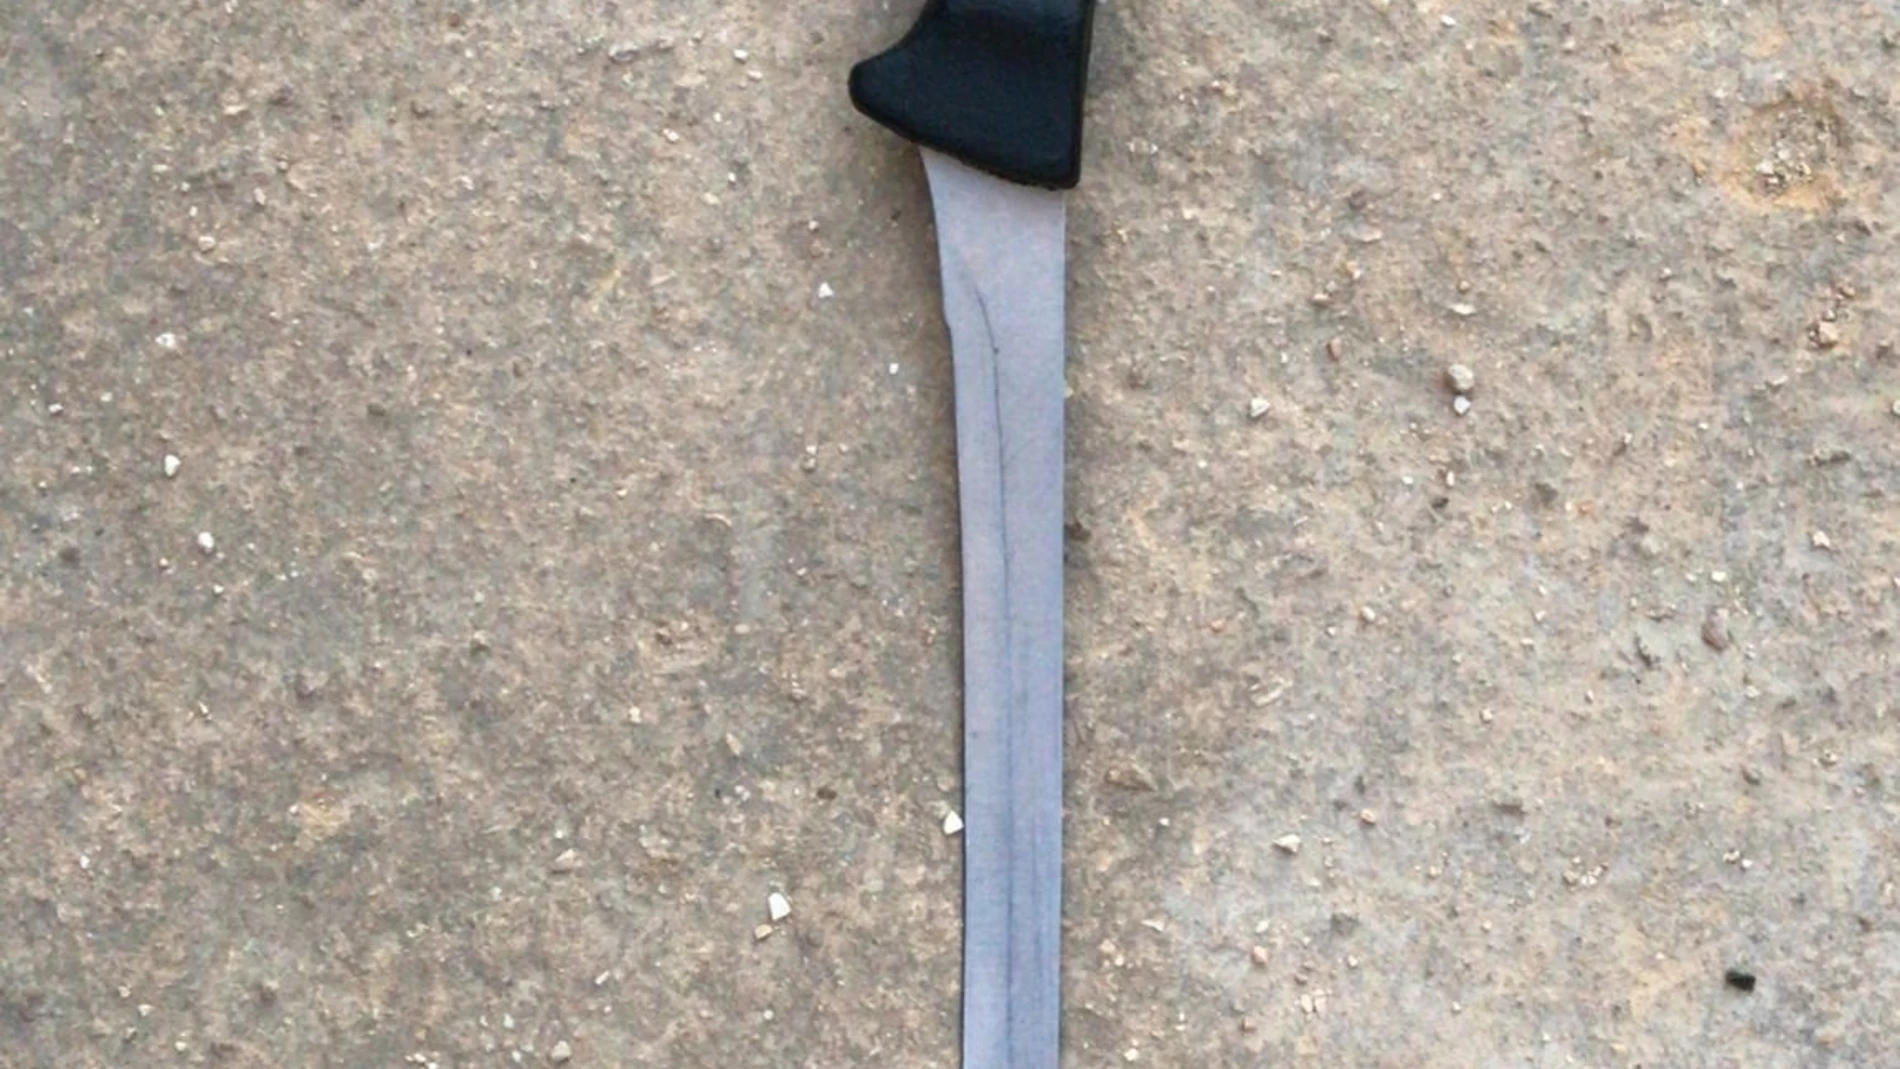 El cuchillo jamonero utilizado en la trifulca. POLICÍA NACIONAL